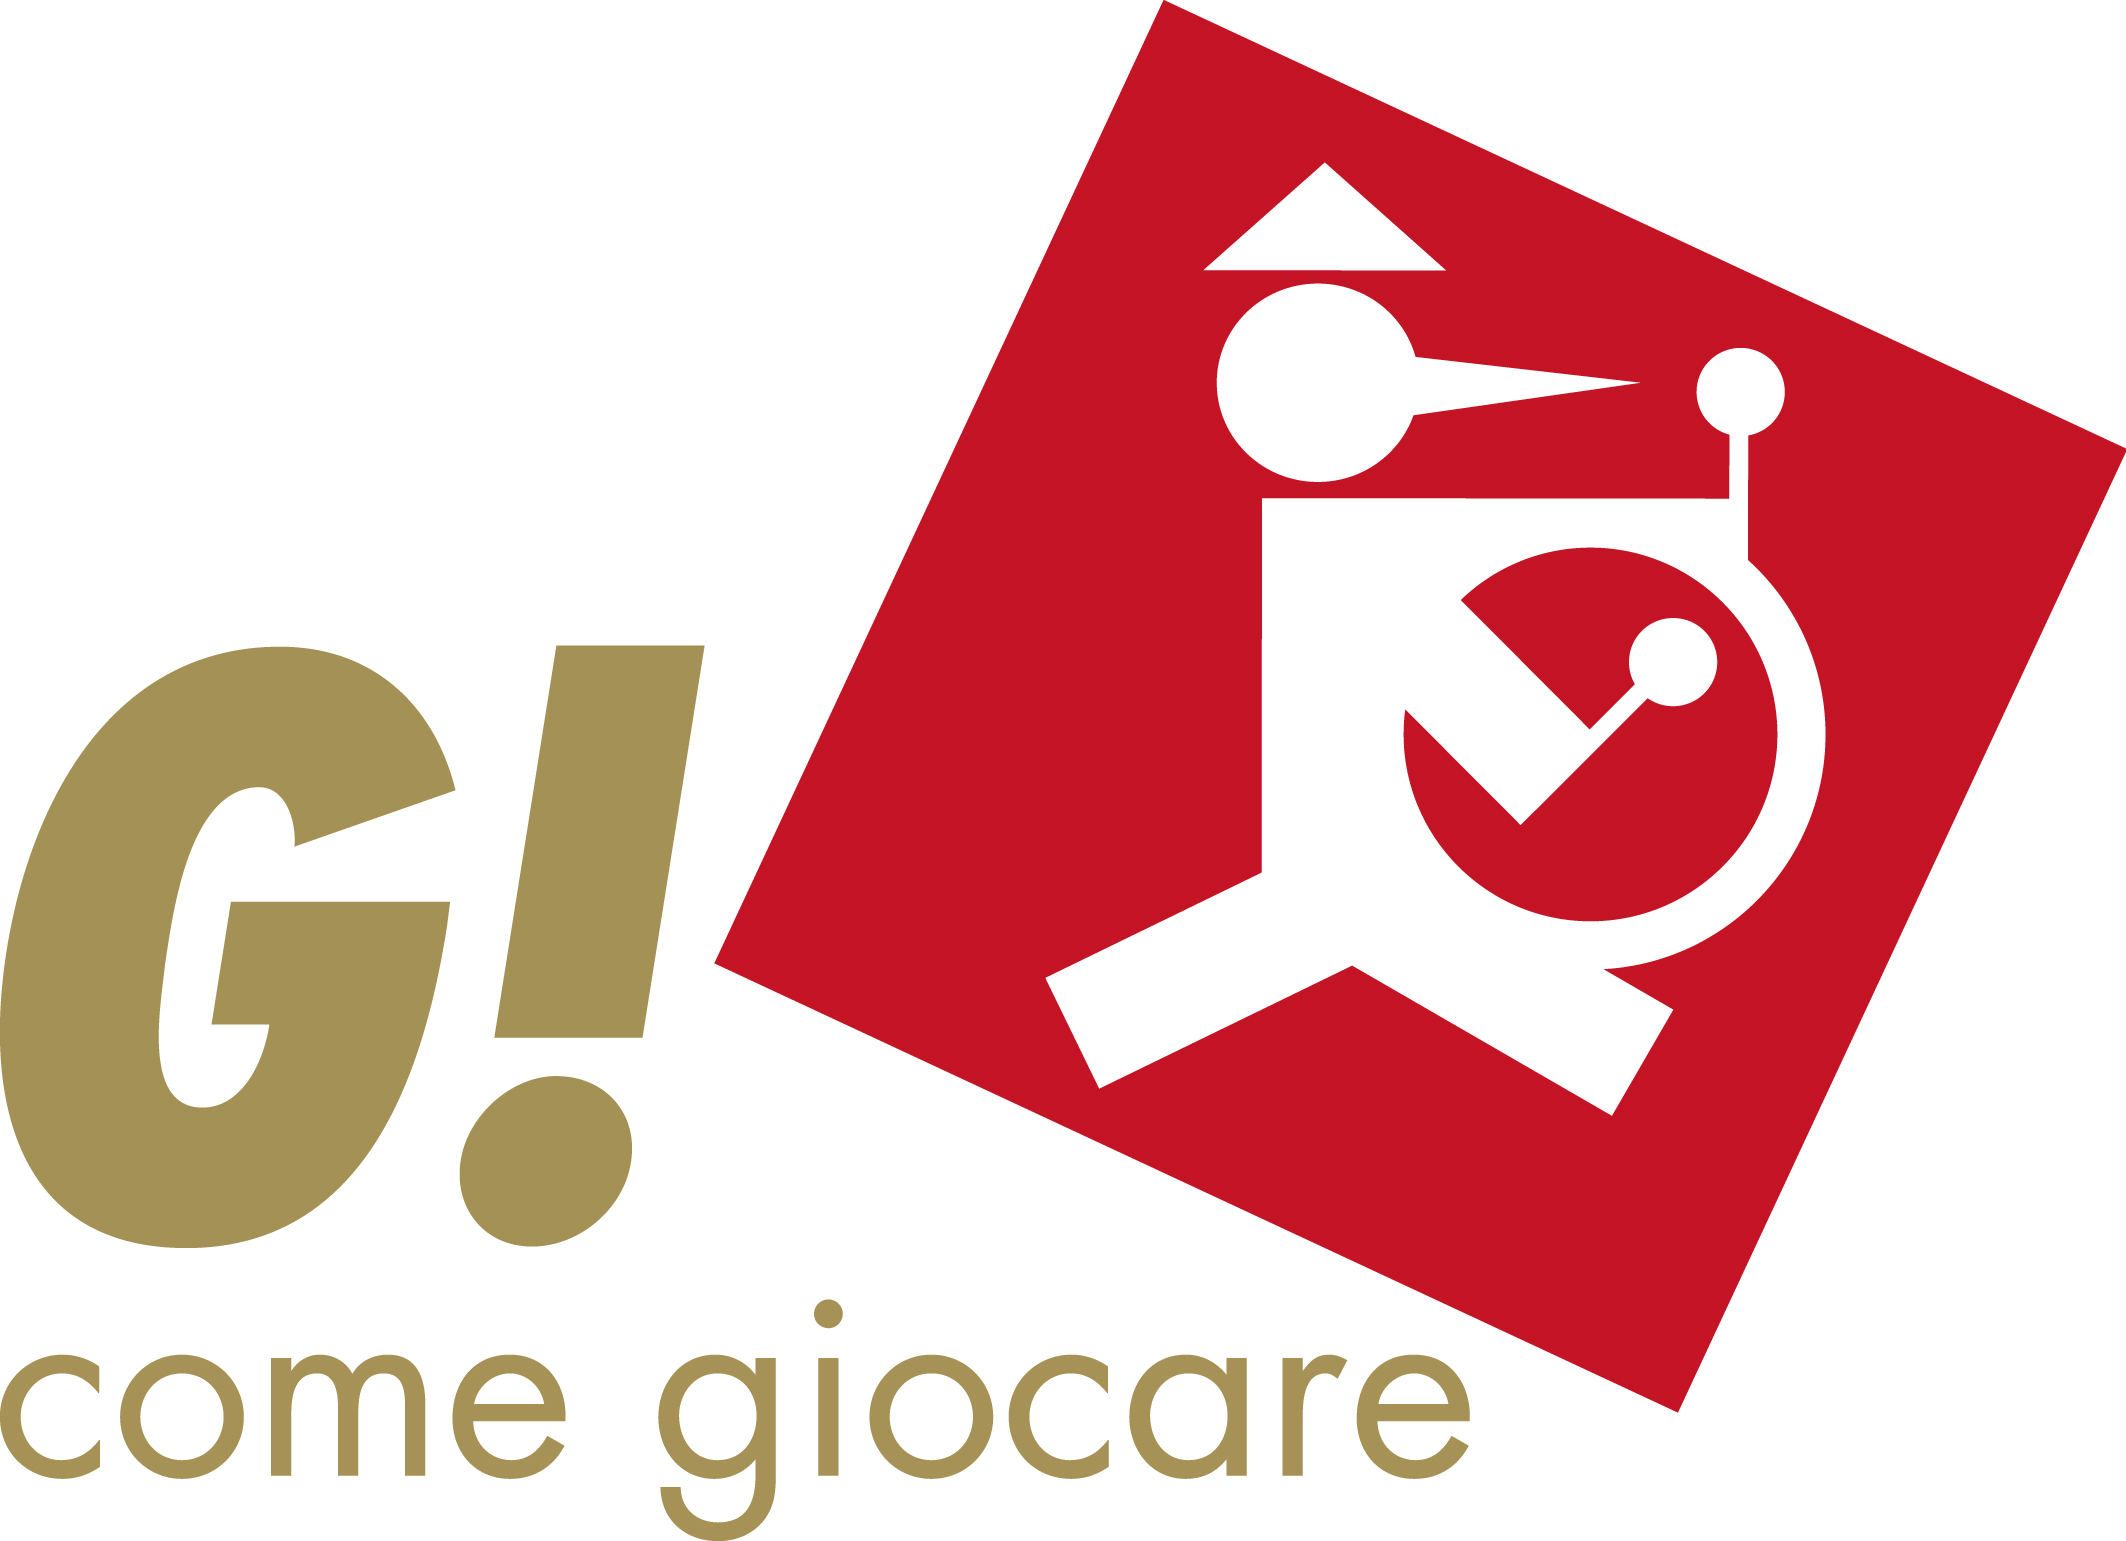 G! come Giocare 2015: date e programma dell’evento a Milano